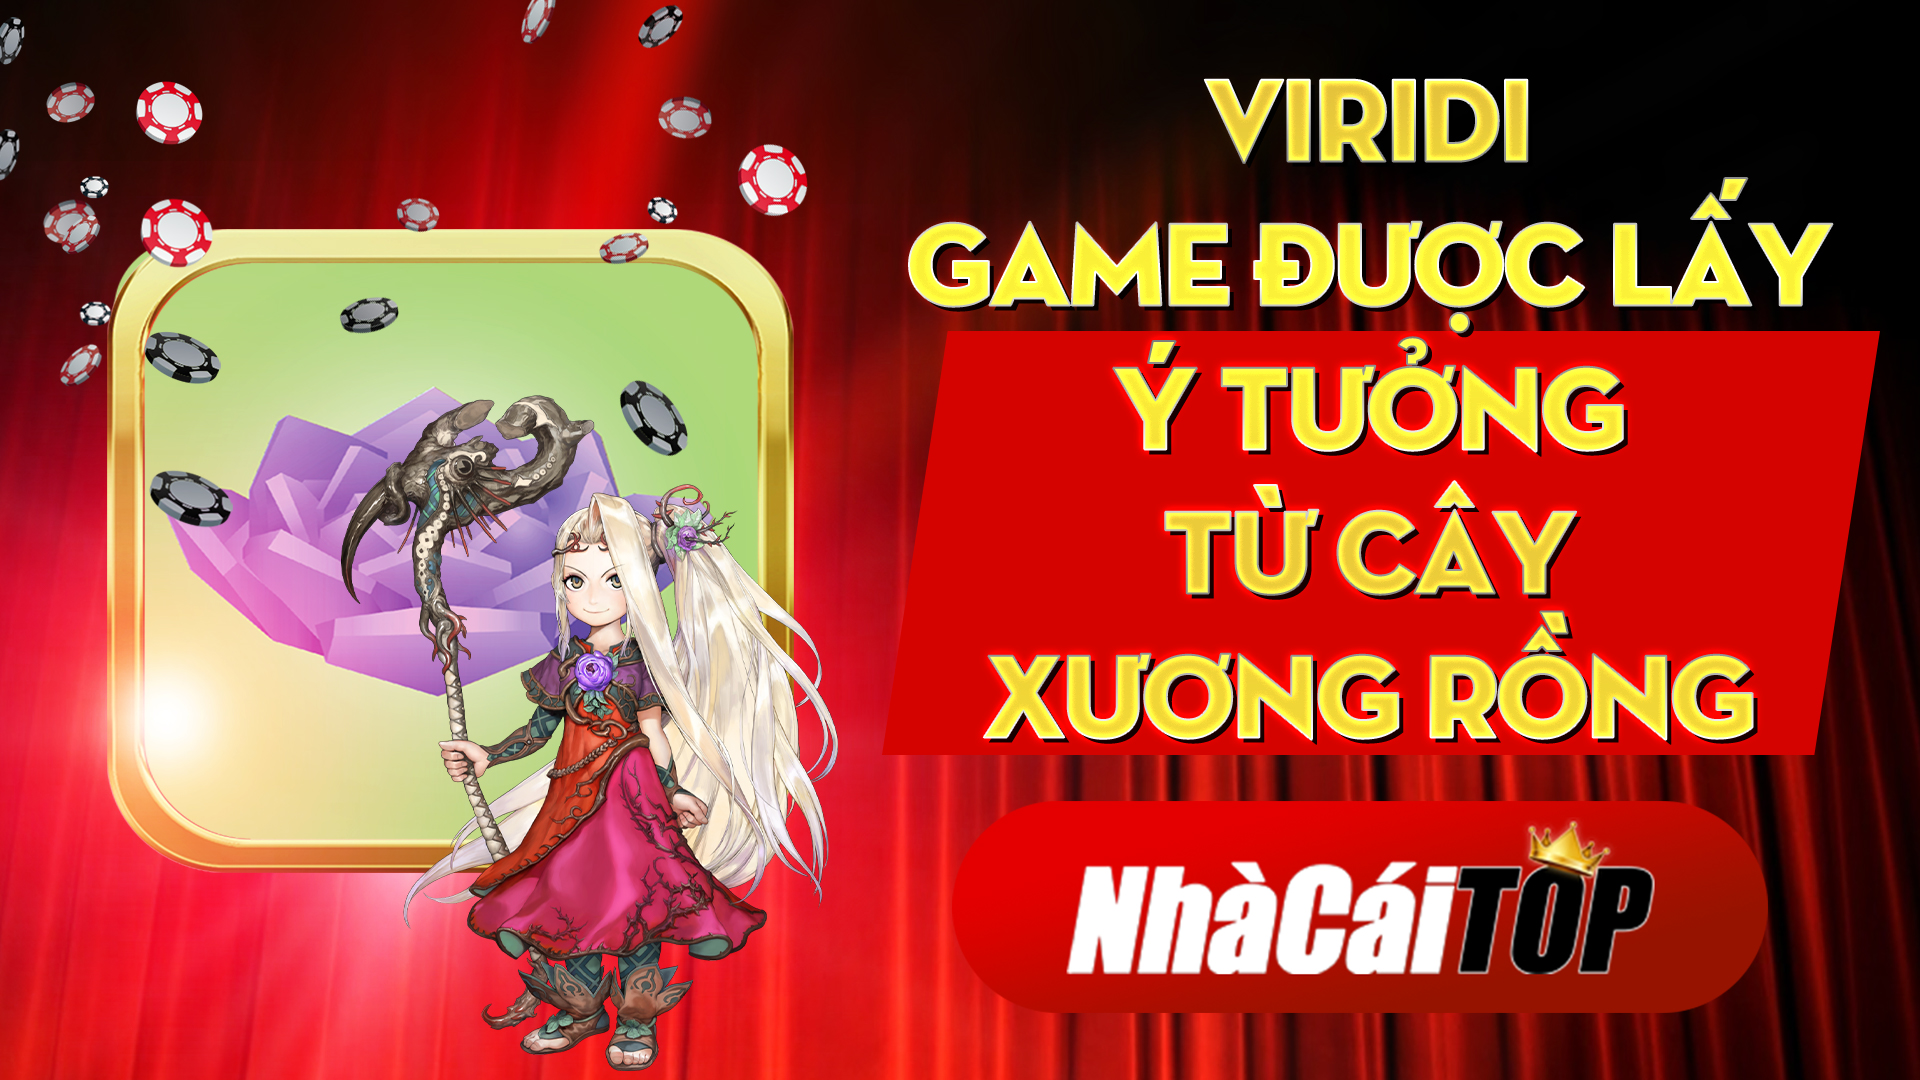 Viridi Game Duoc Lay Y Tuong Tu Cay Xuong Rong